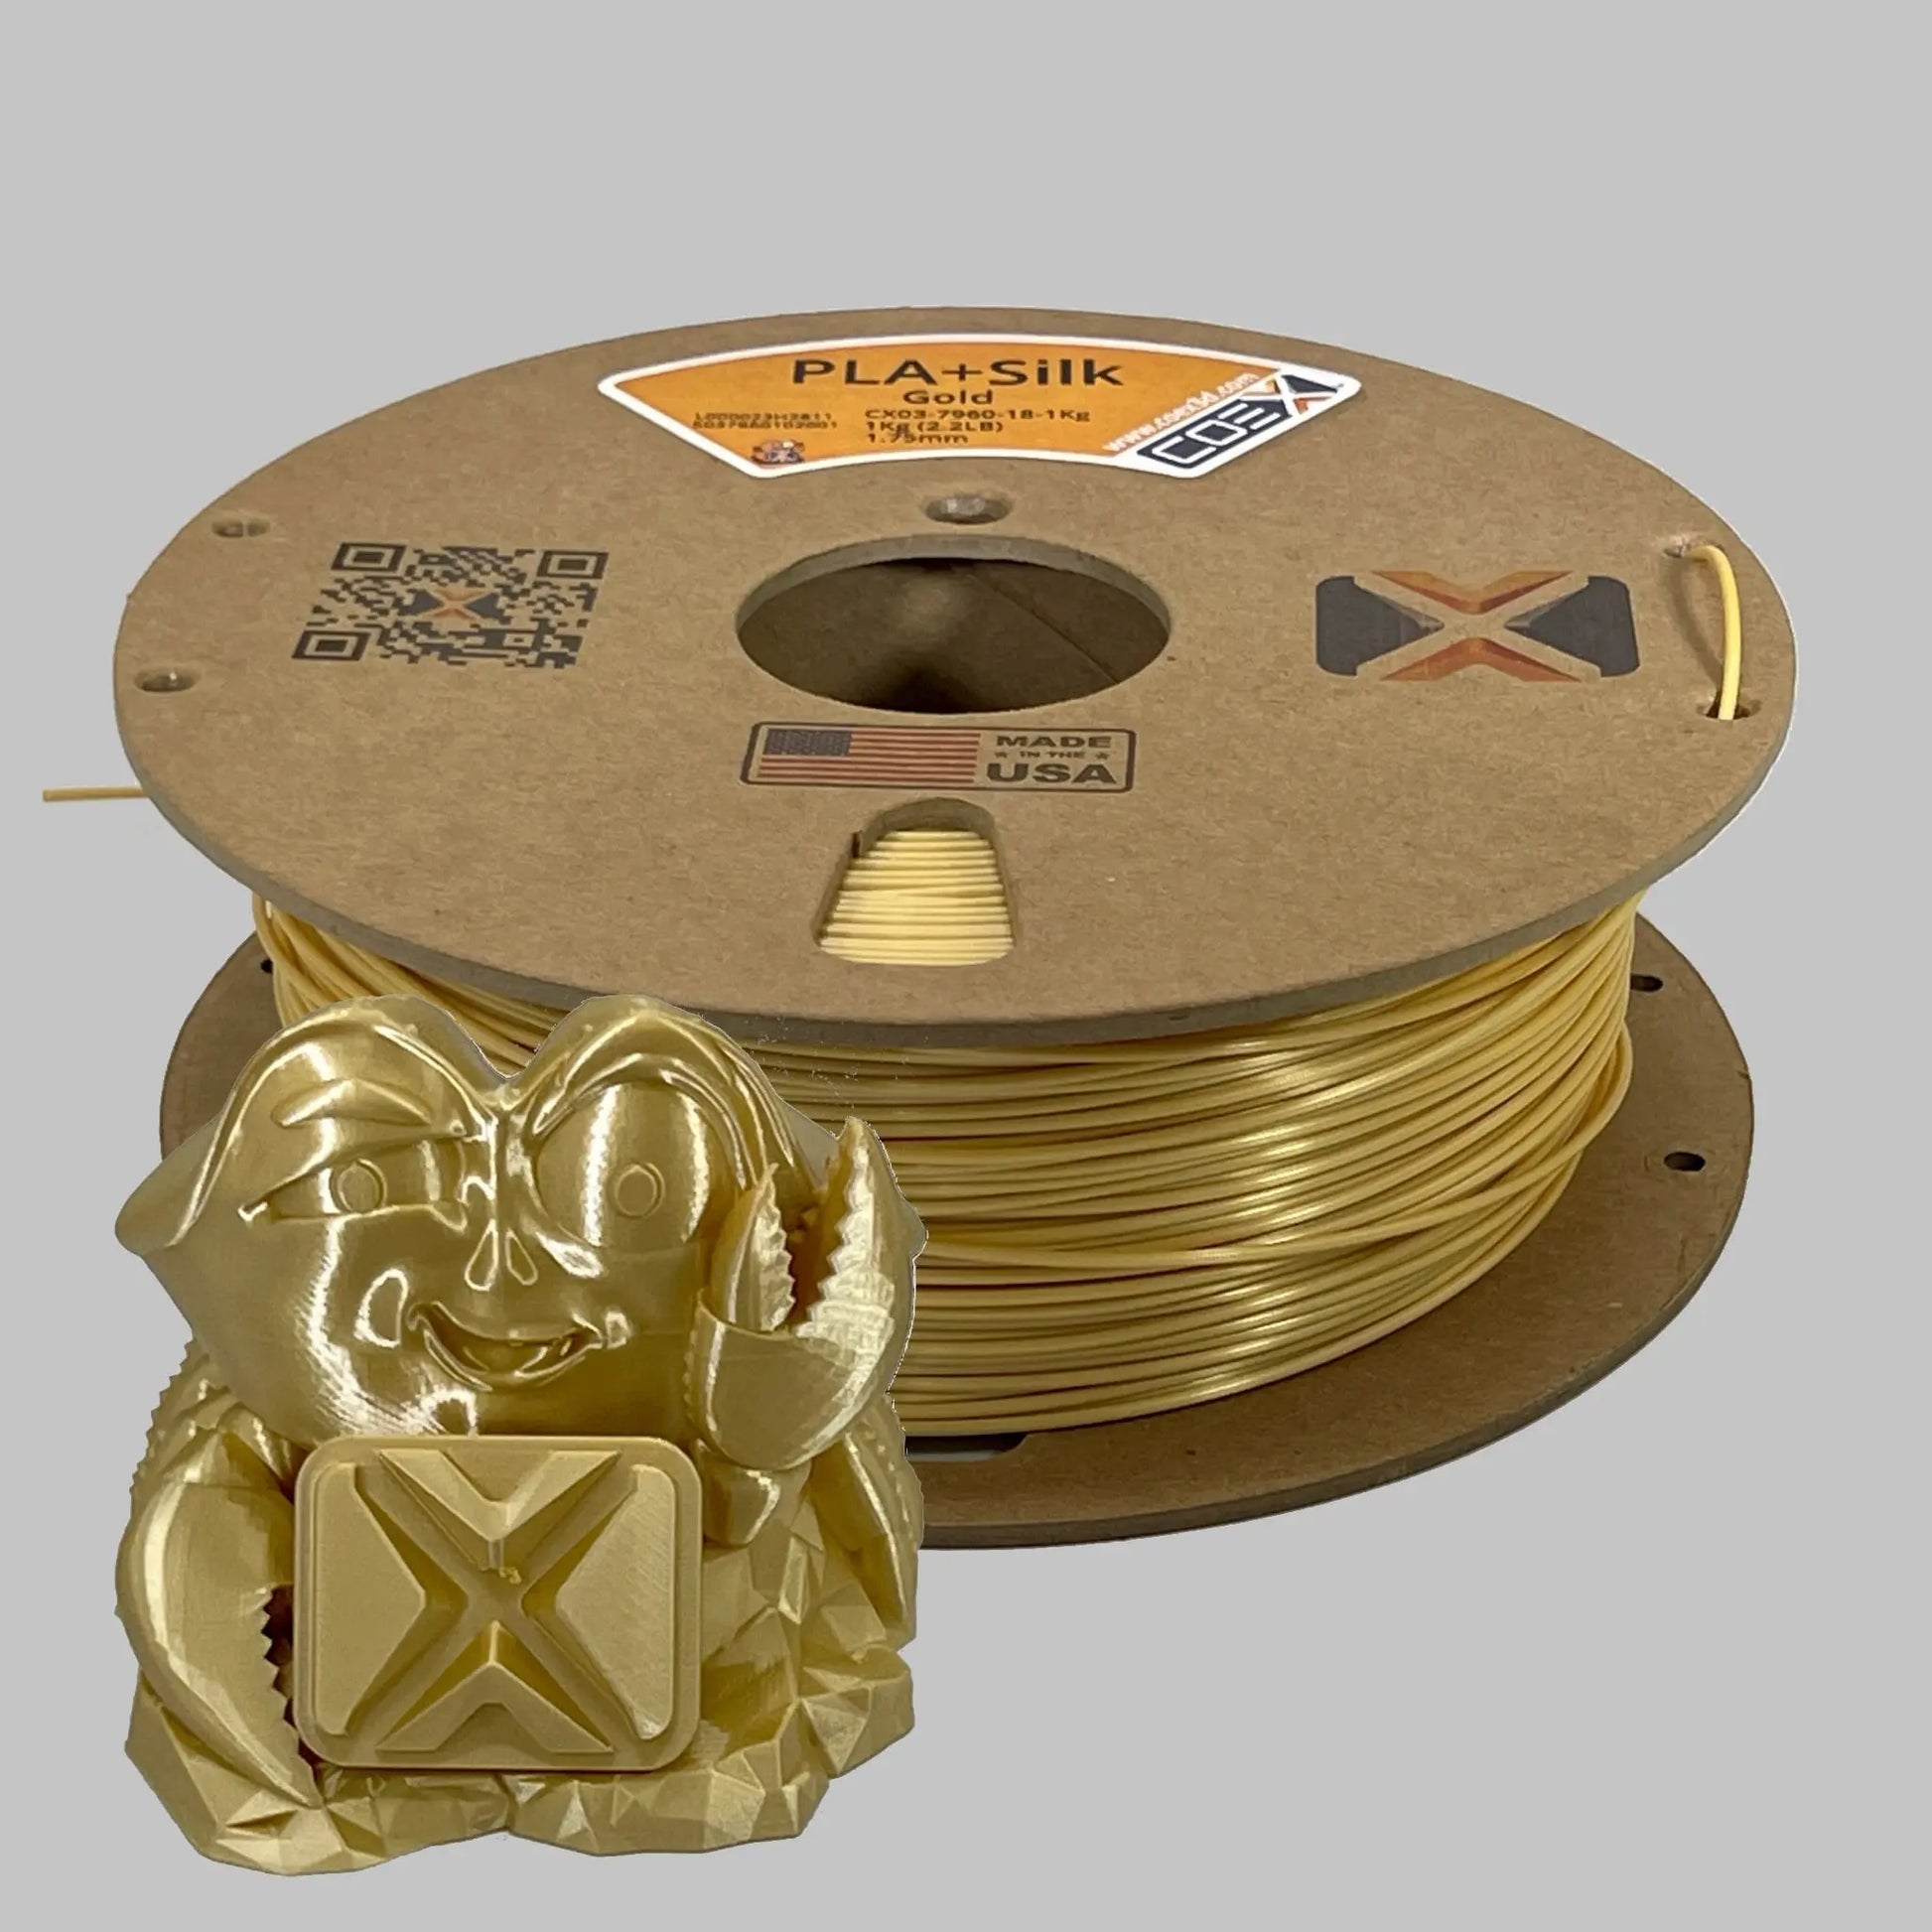 Buy Gold PLA+Silk 3D Printer Filament